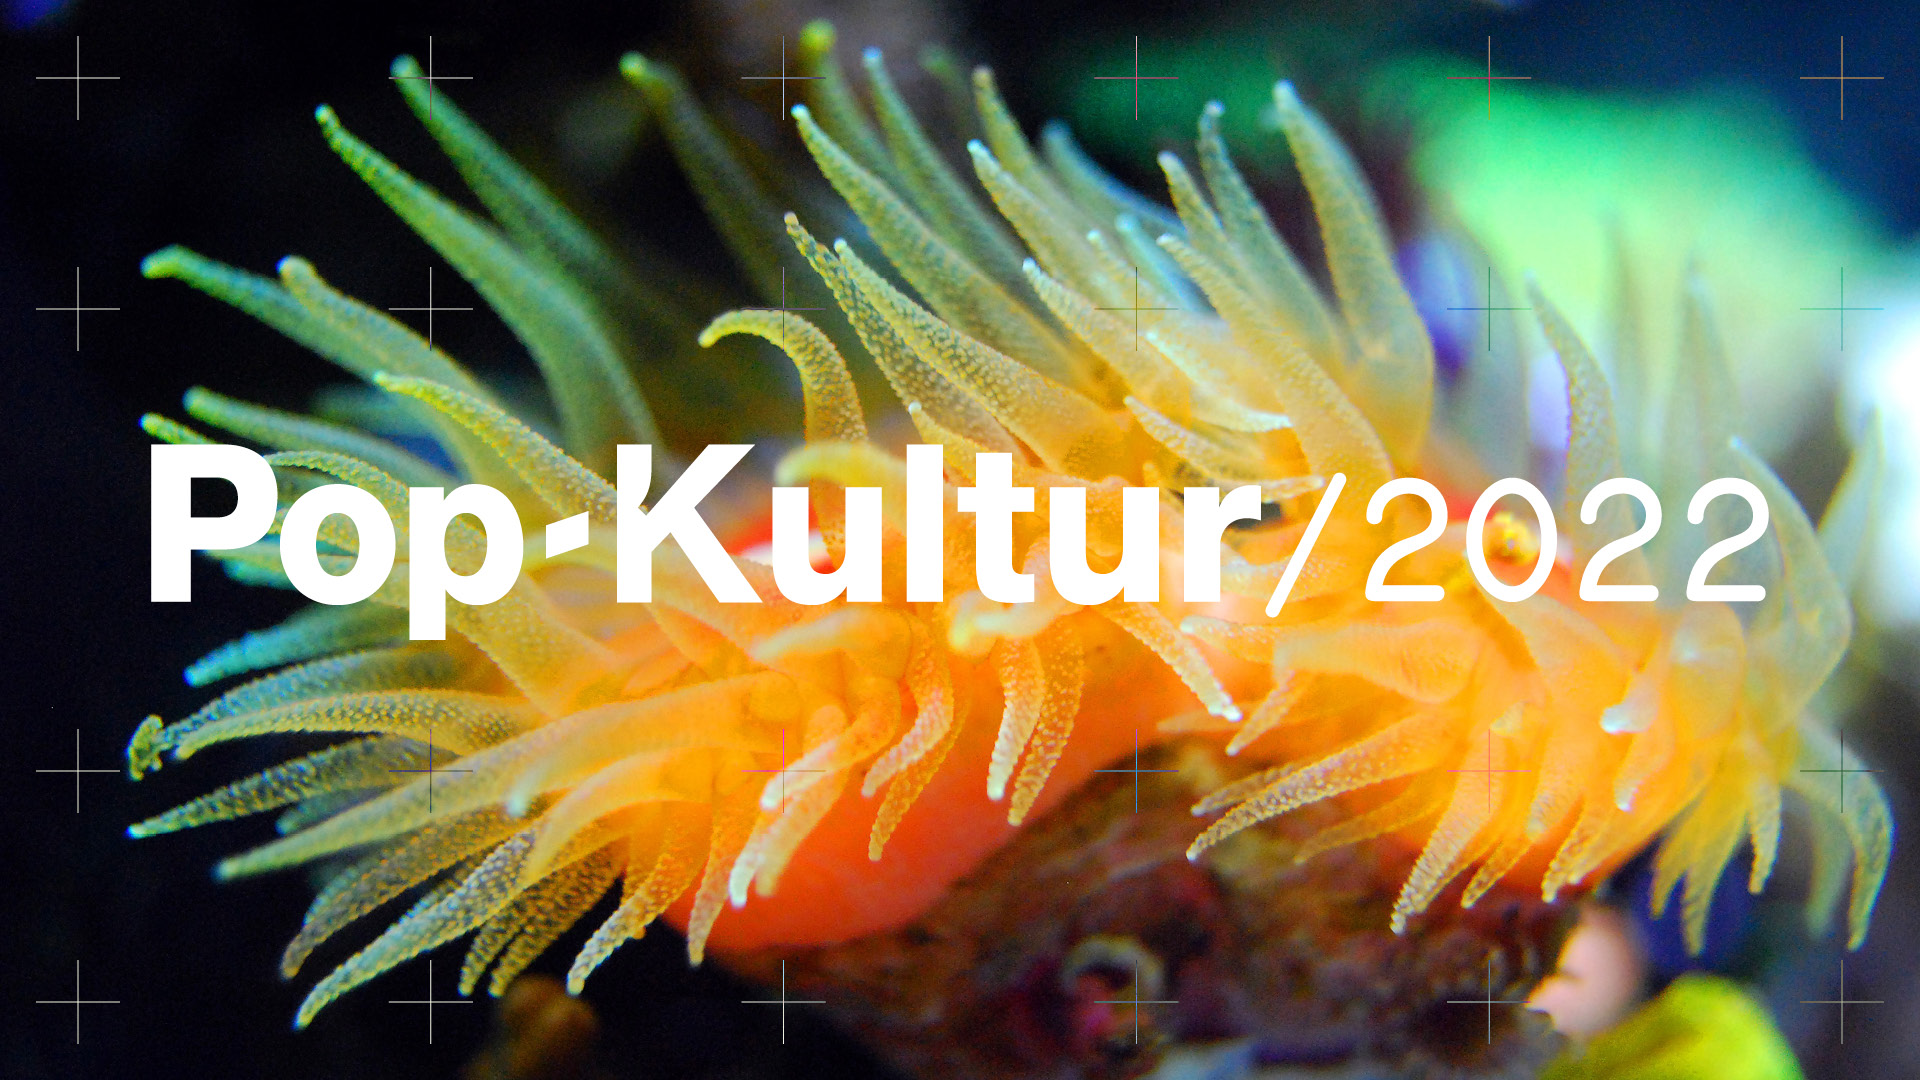 Pop-Kultur 2022 Visual: Einzelne orangefarbene Koralle mit einer Vielzahl an Fühlern im Hintergrund, im Vordergrund der Schriftzug Pop-Kultur 2022.